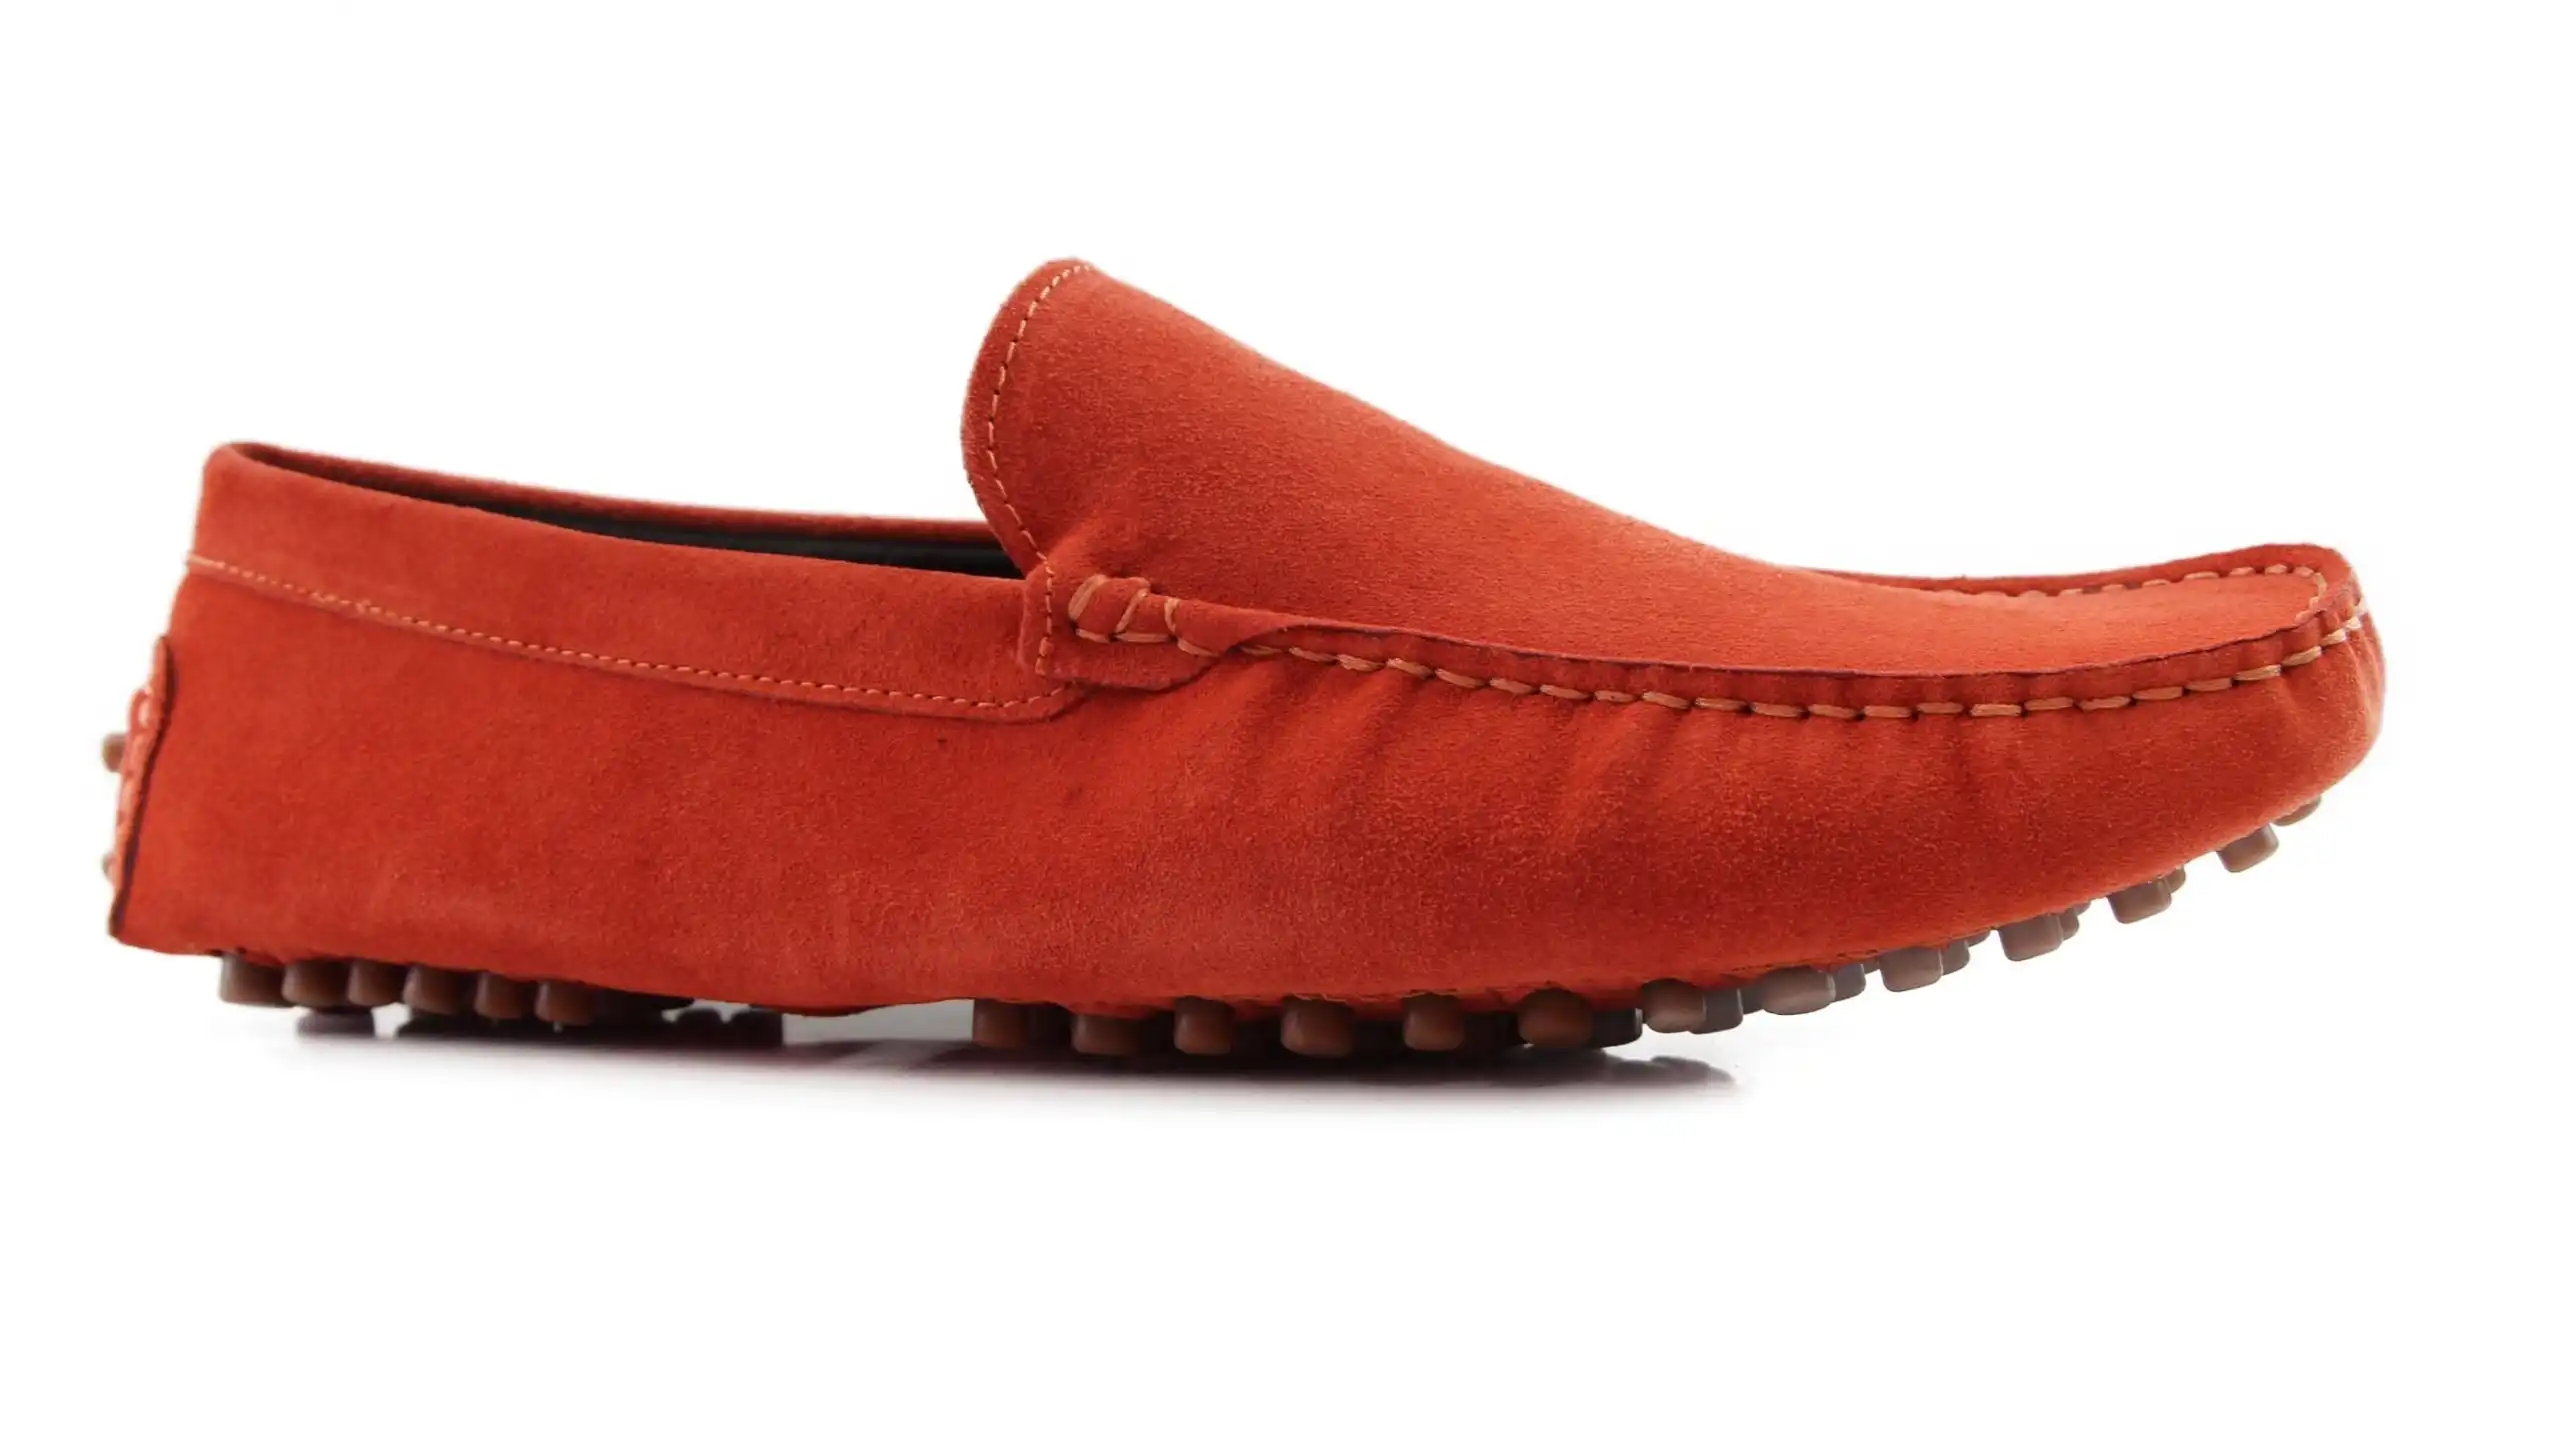 Mens Zasel Summer Slip On Orange Suede Boat Shoes